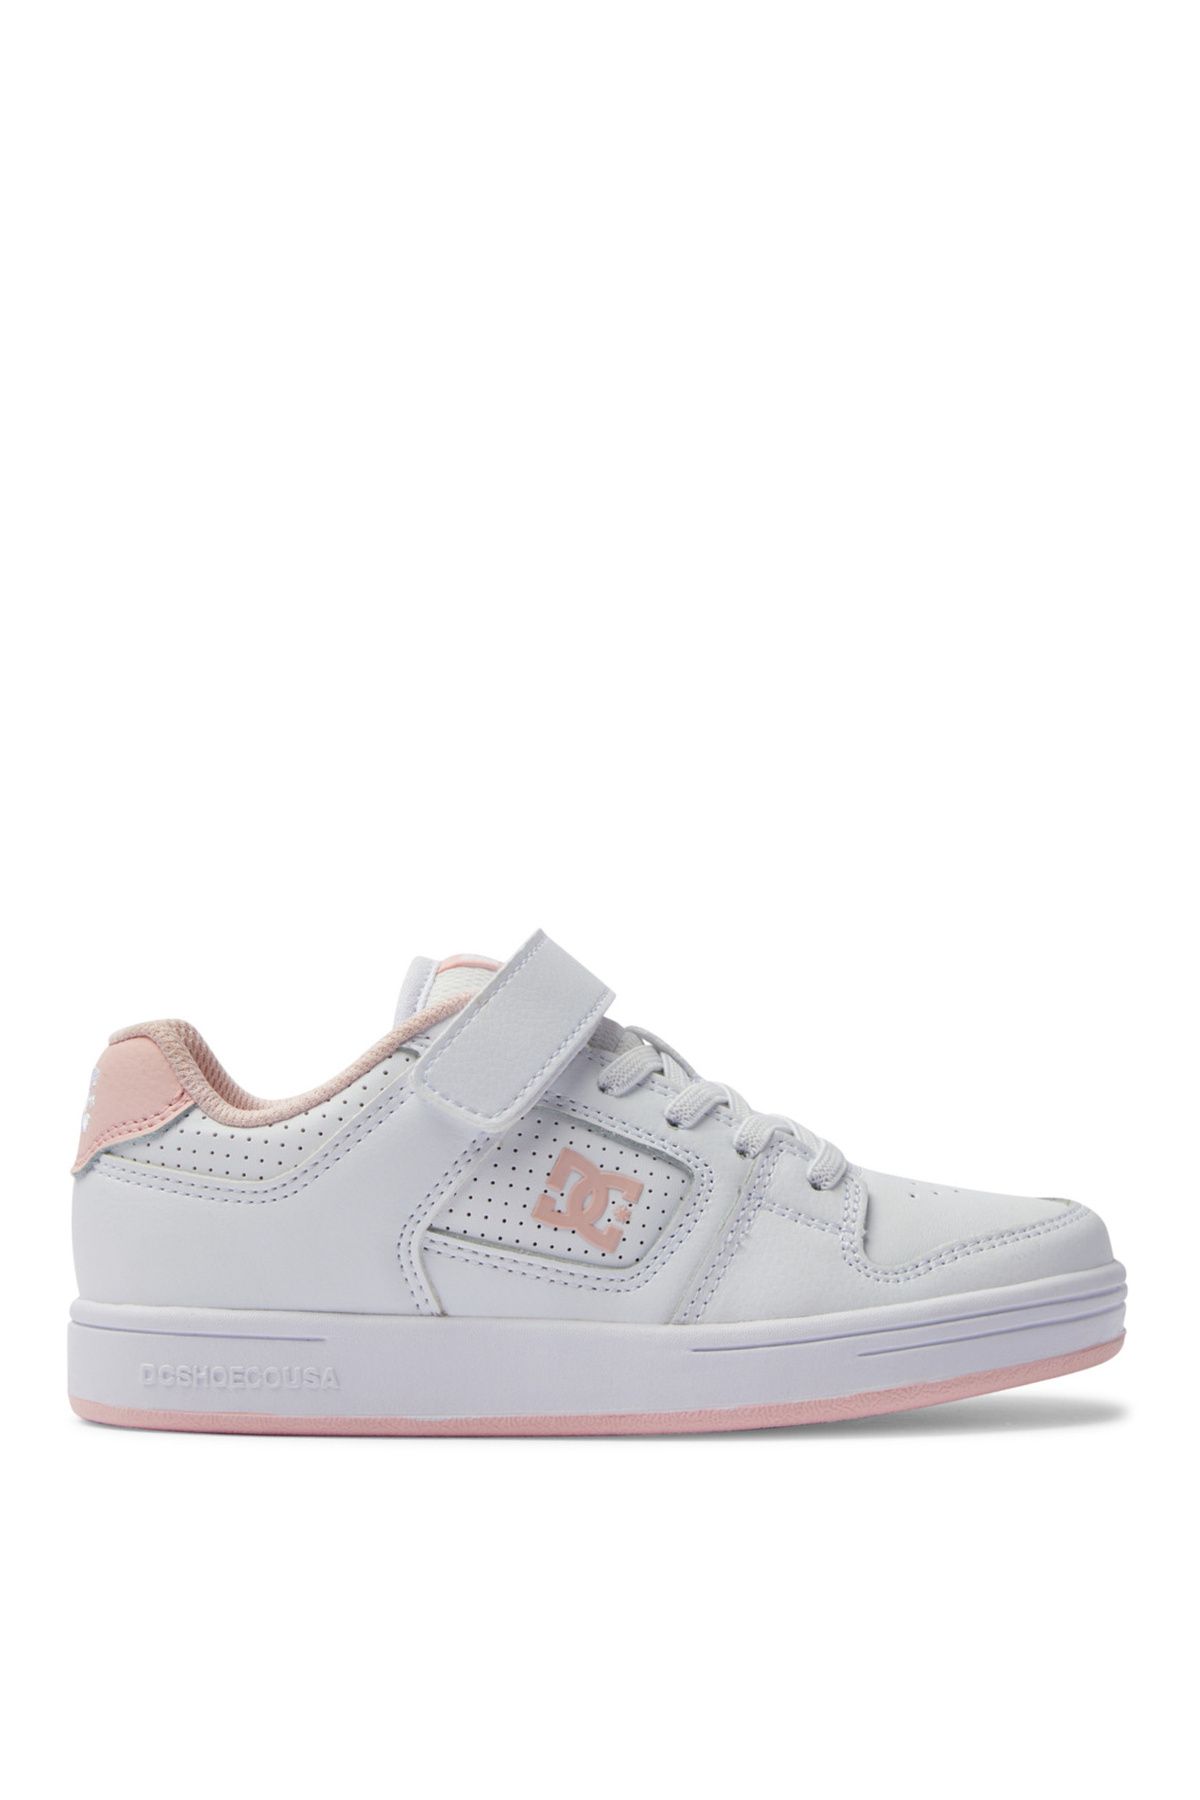 DC Beyaz - Pembe Kız Çocuk Deri + Tekstil Yürüyüş Ayakkabısı ADGS100100